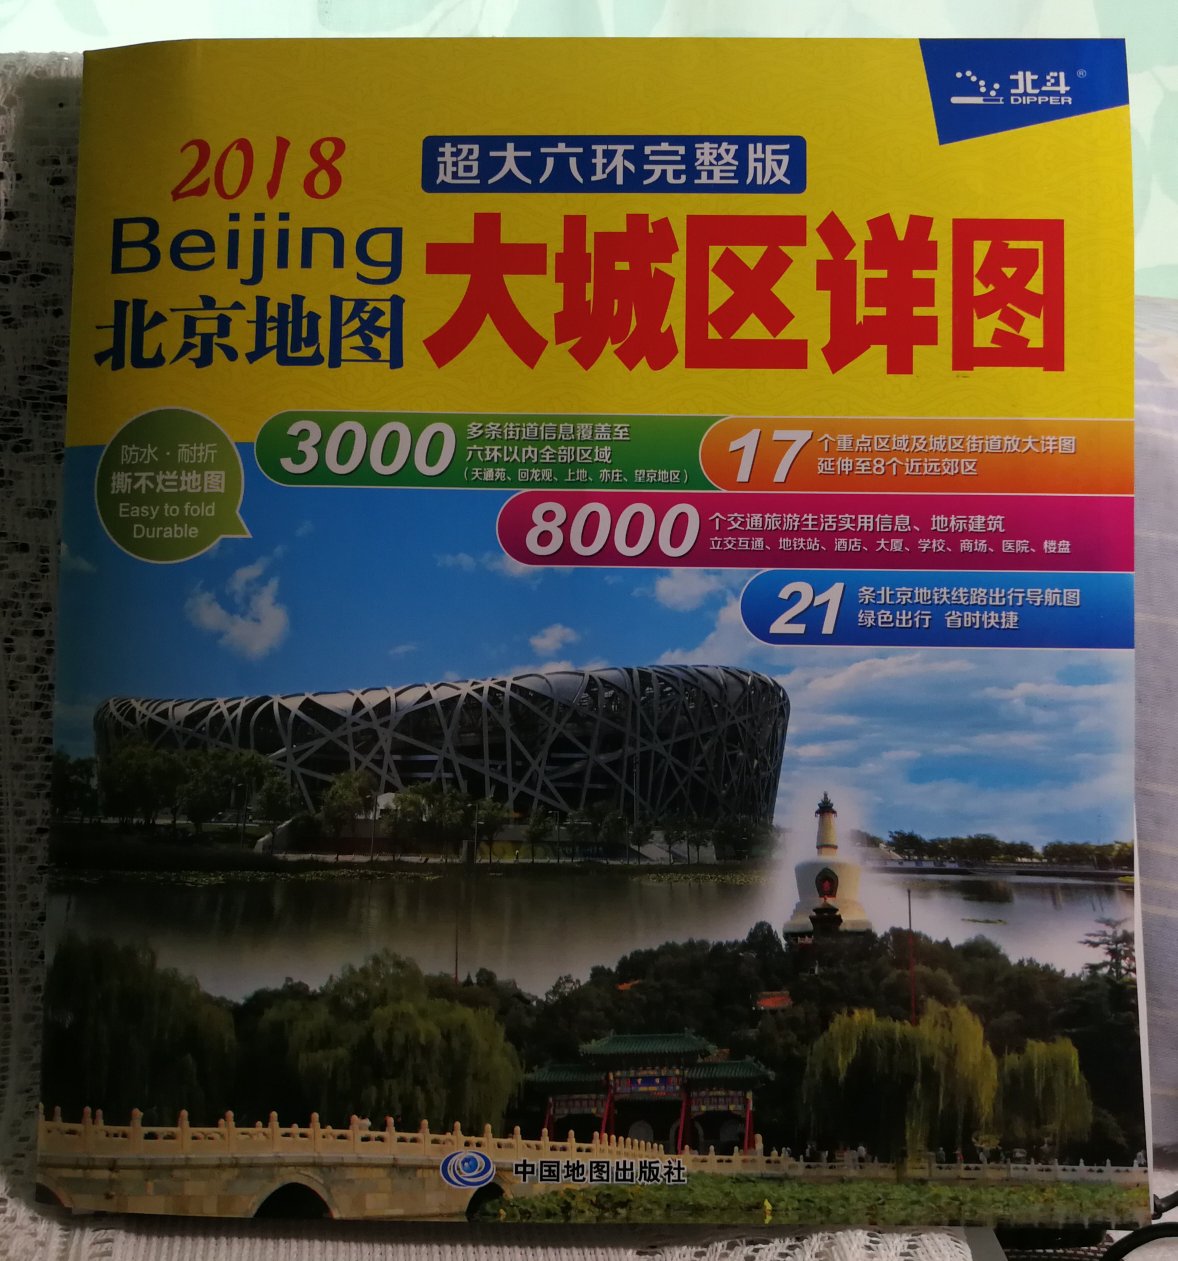 非常满意的一次网购  2018年北京地图大城区详图很详细